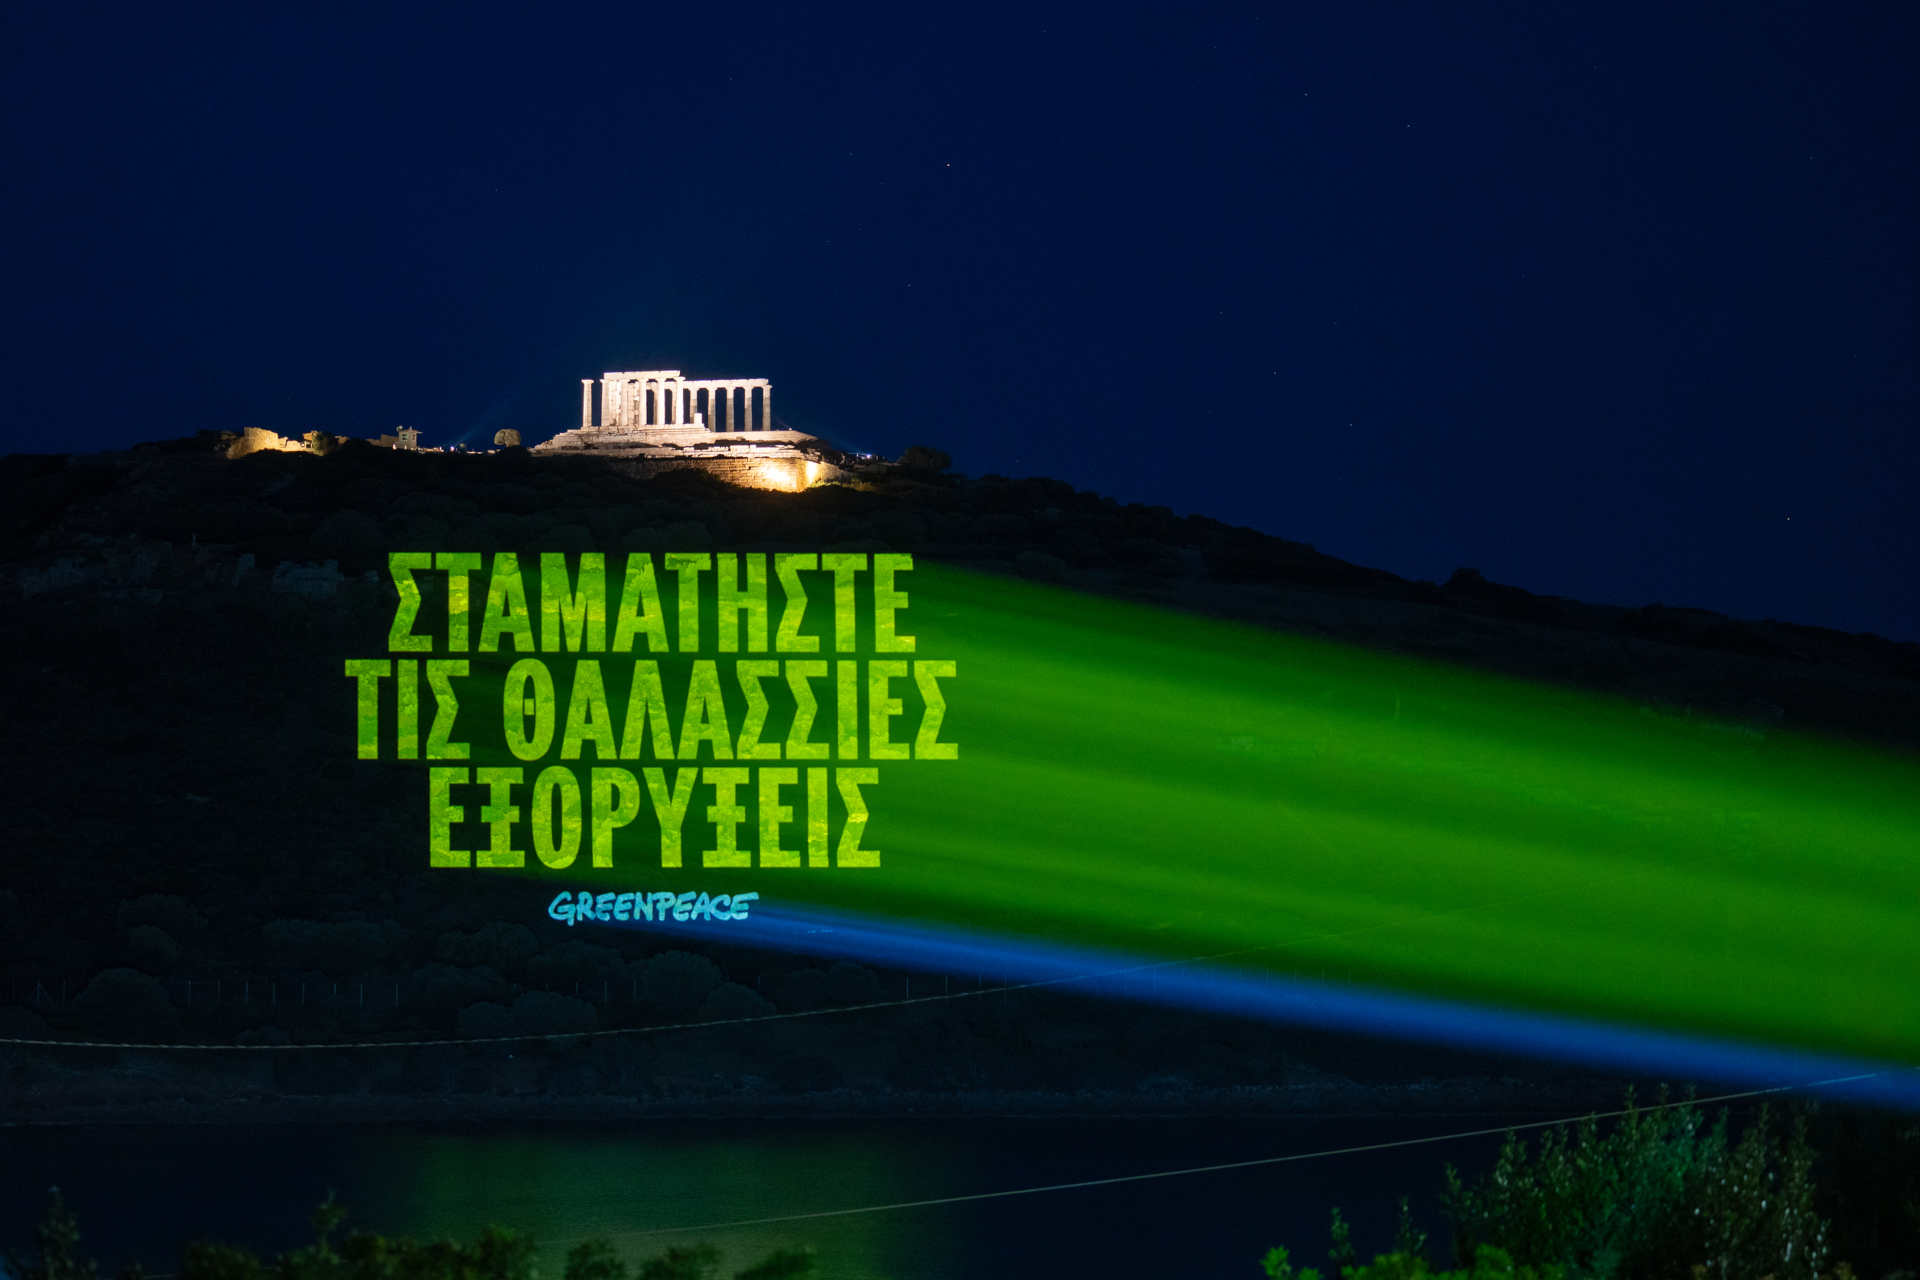 Grčka: poruka na grčkom koja glasi